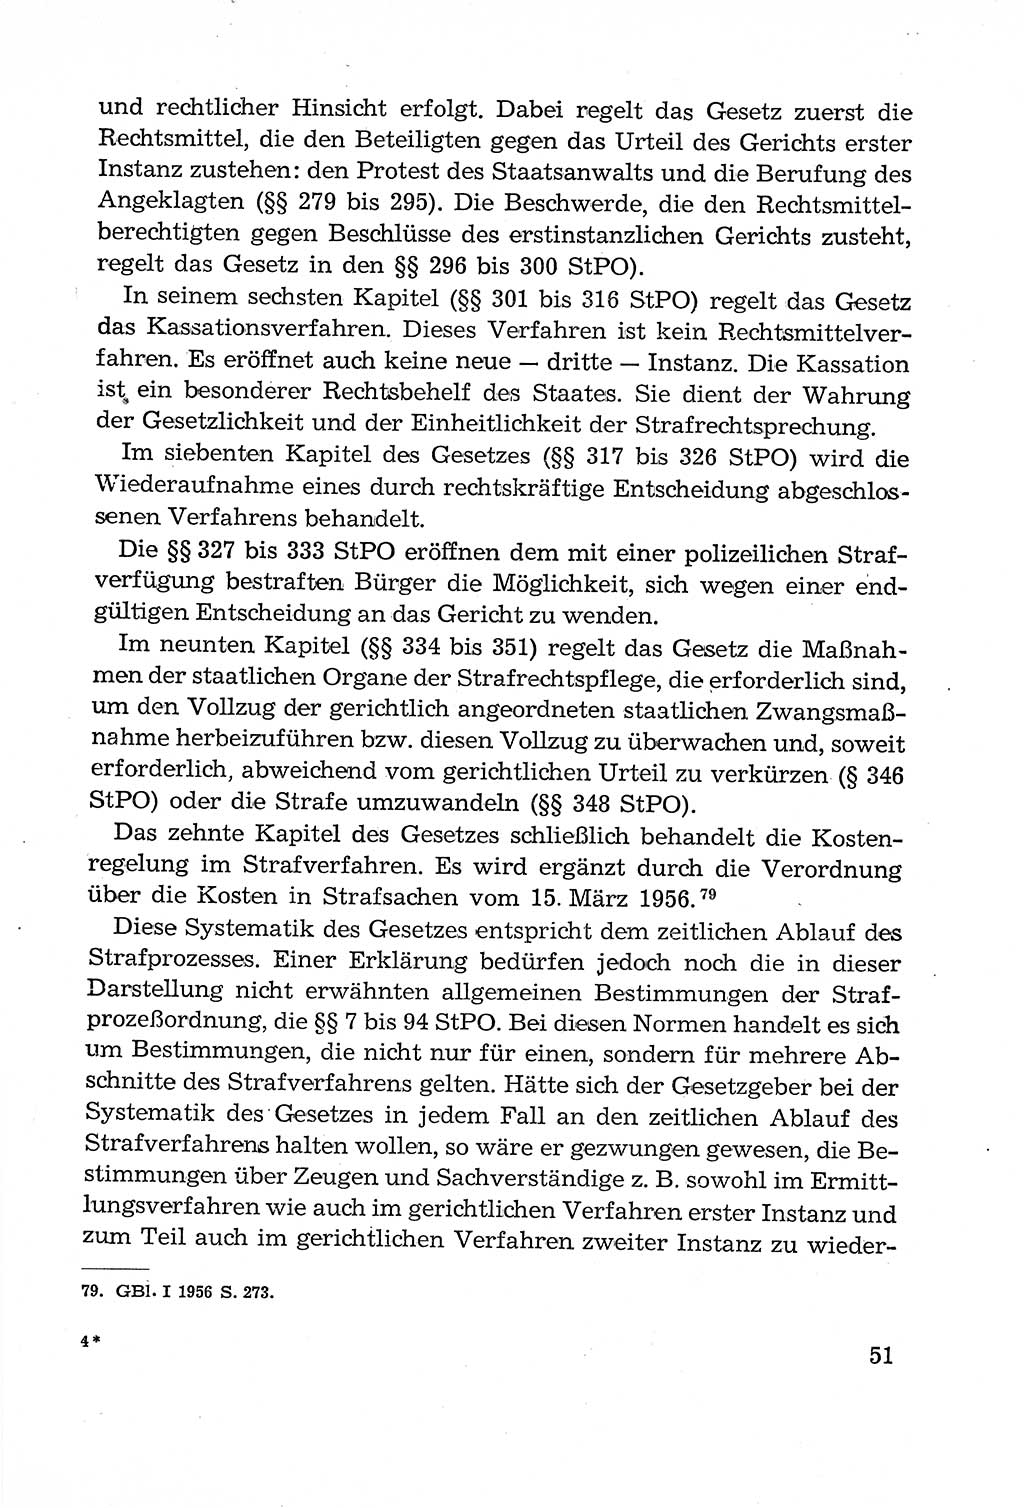 Leitfaden des Strafprozeßrechts der Deutschen Demokratischen Republik (DDR) 1959, Seite 51 (LF StPR DDR 1959, S. 51)